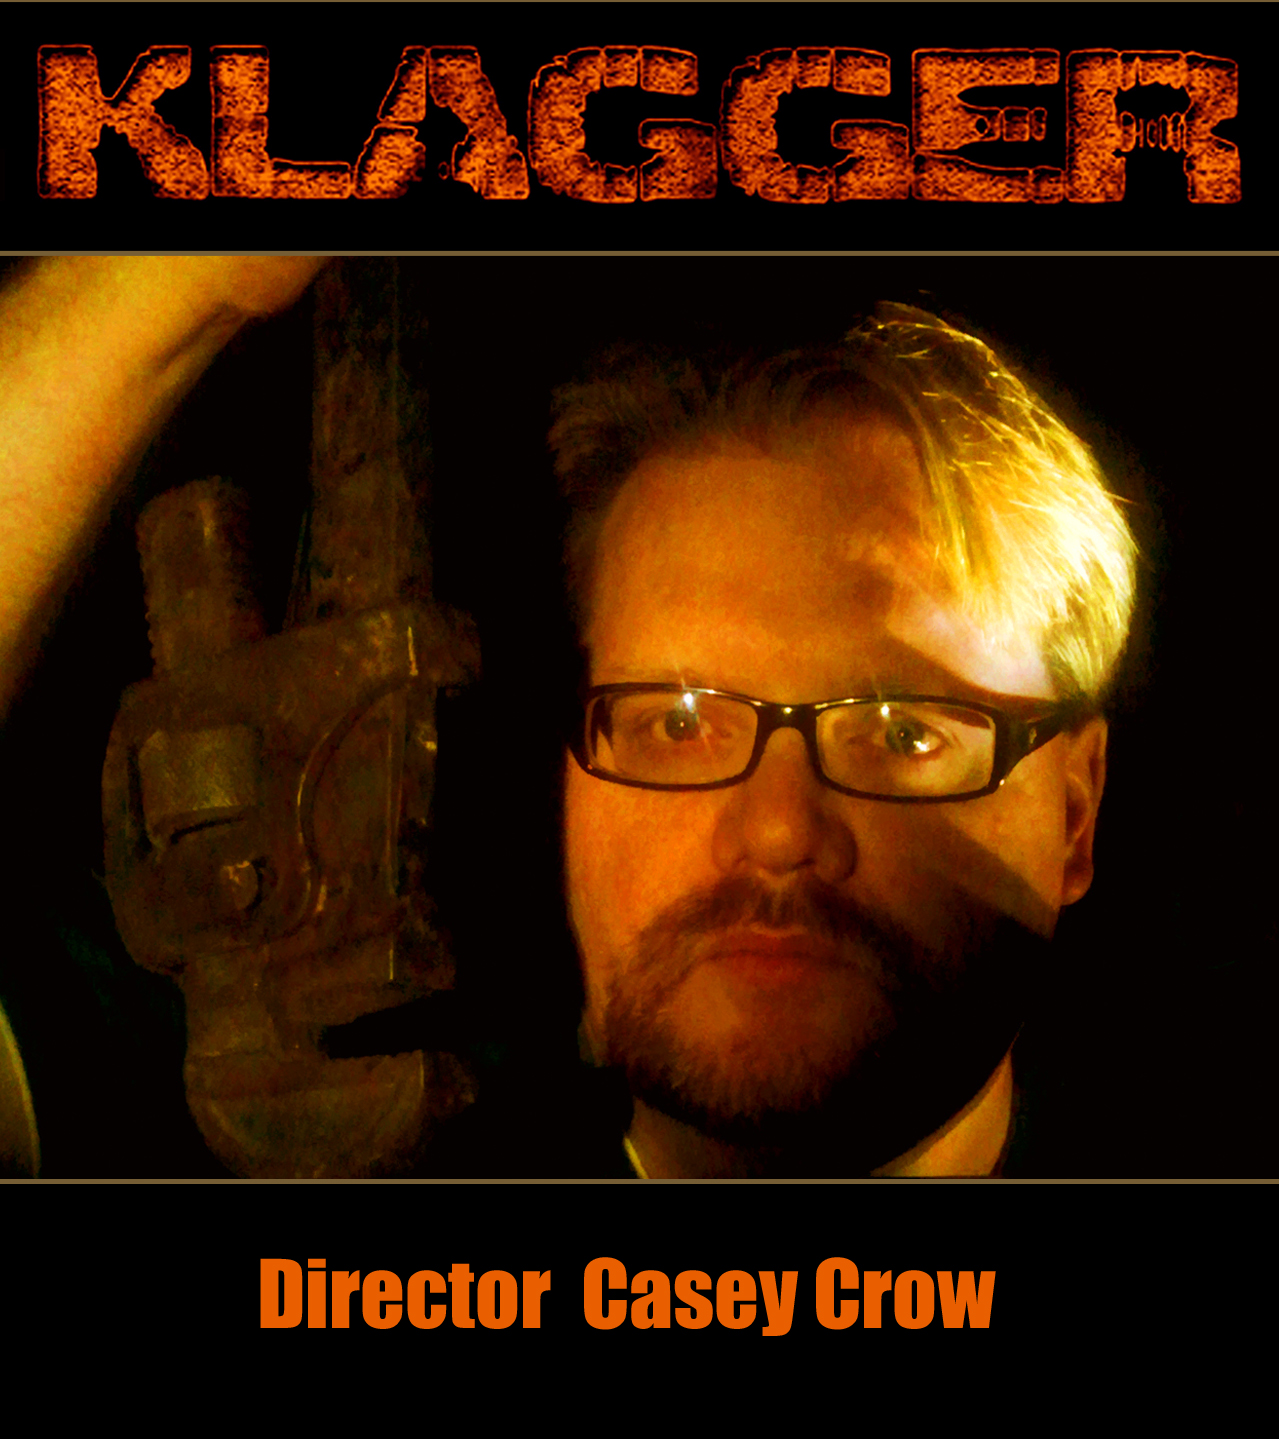 KLAGGER Director Casey Crow